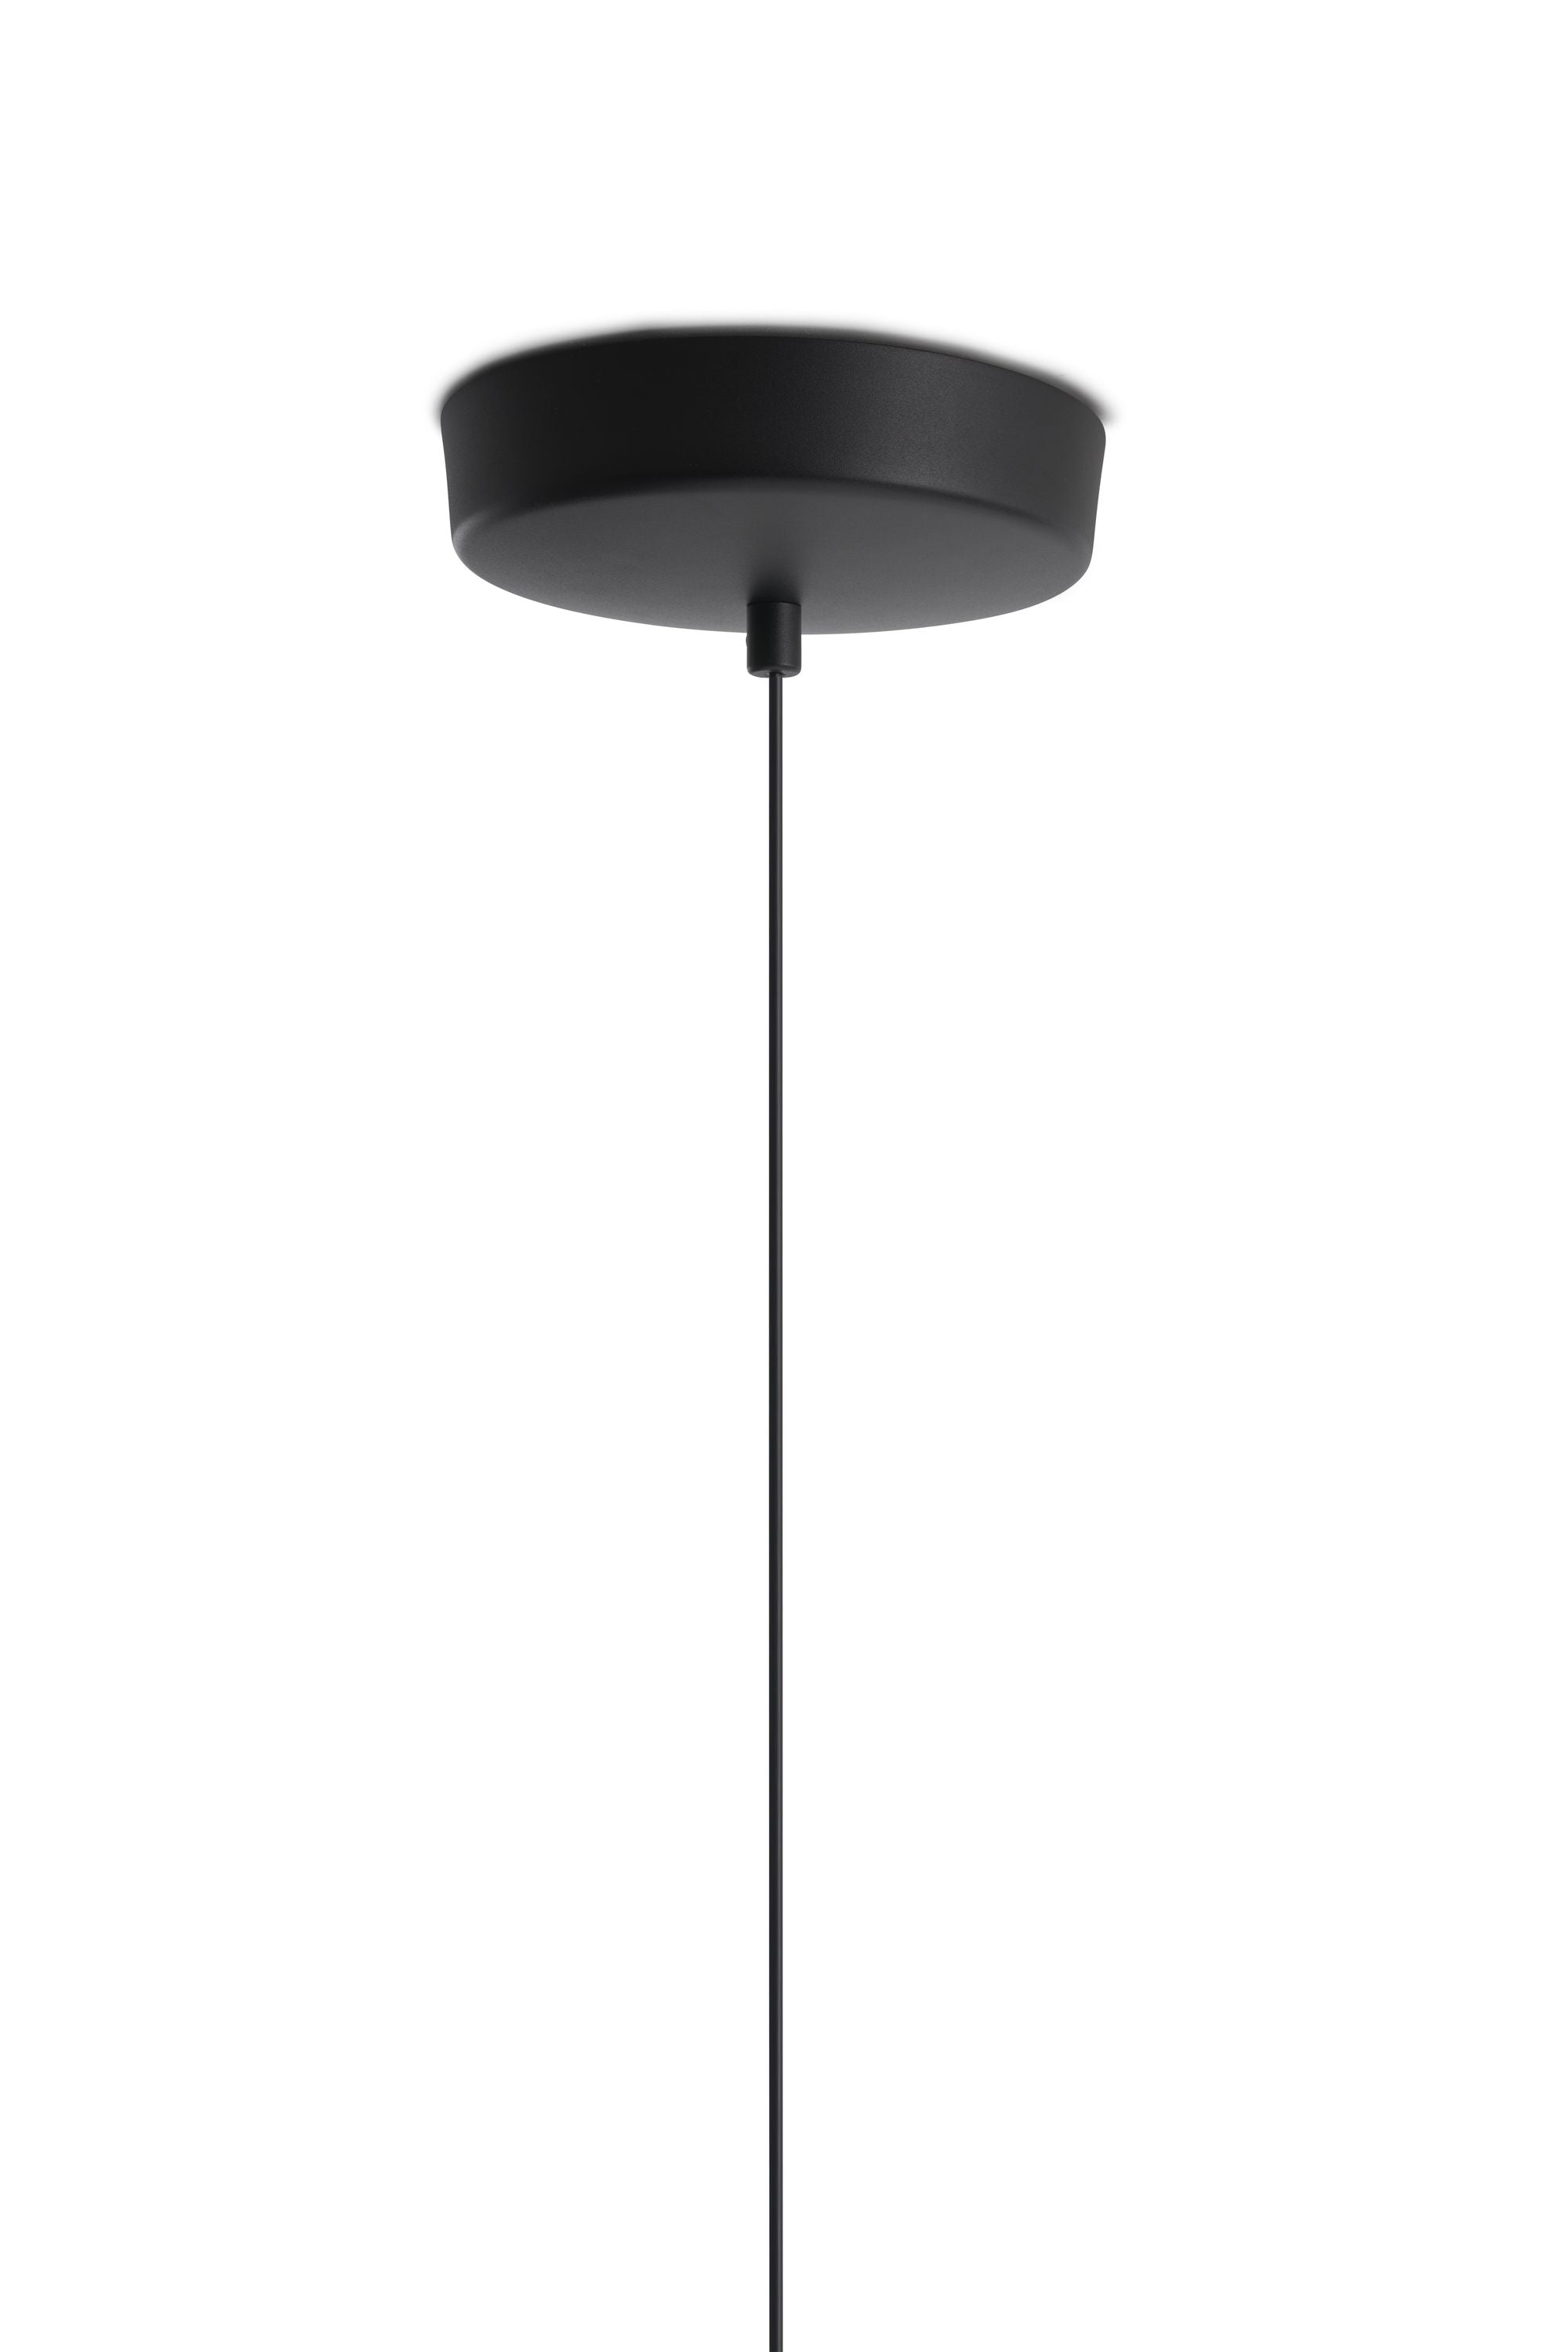 Nowa lampka wisząca napięta, Ø 120 cm